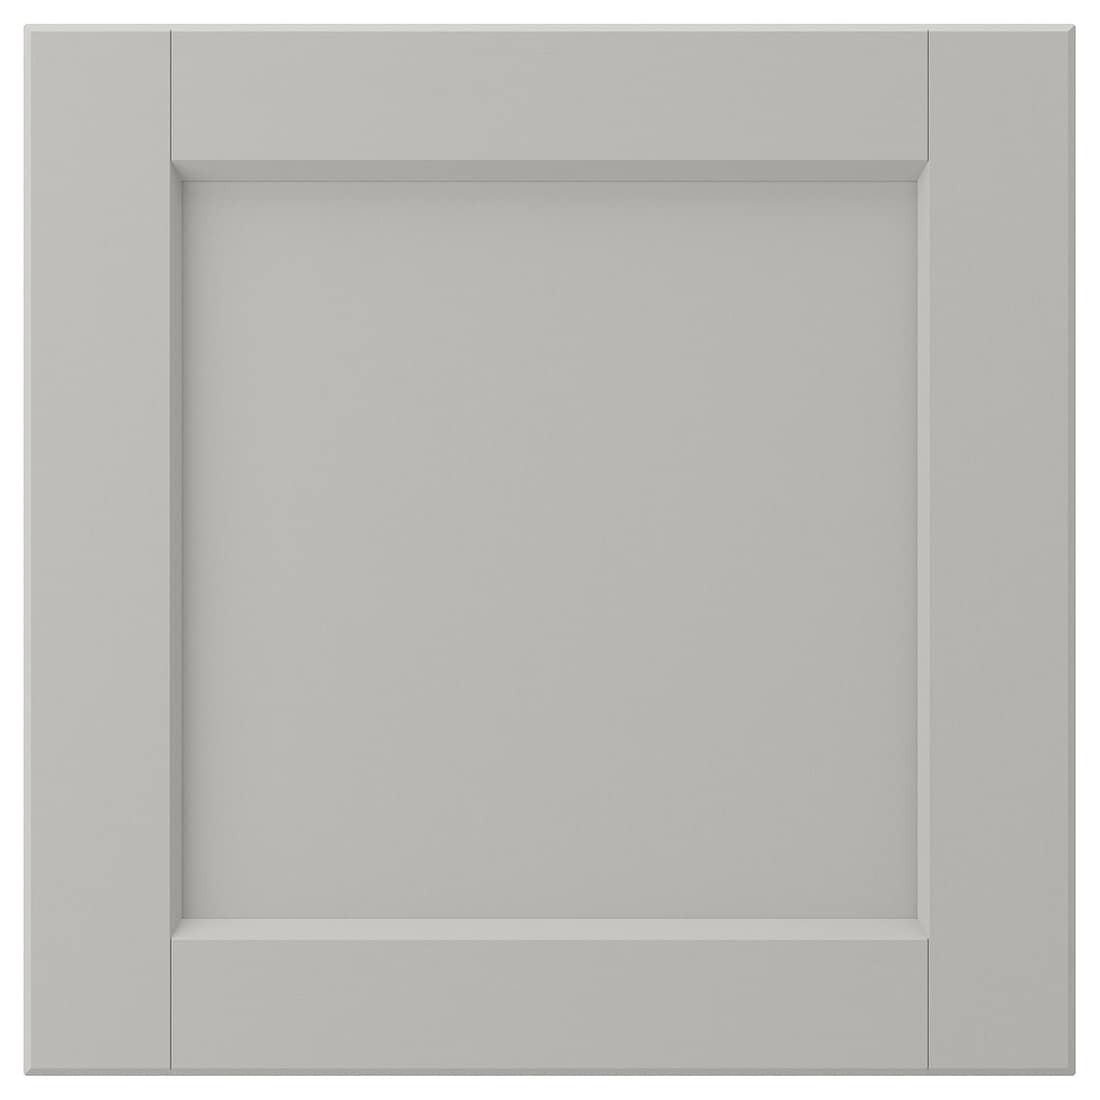 IKEA LERHYTTAN ЛЕРХЮТТАН Фронтальная панель ящика, светло-серый, 40x40 см 10461500 | 104.615.00